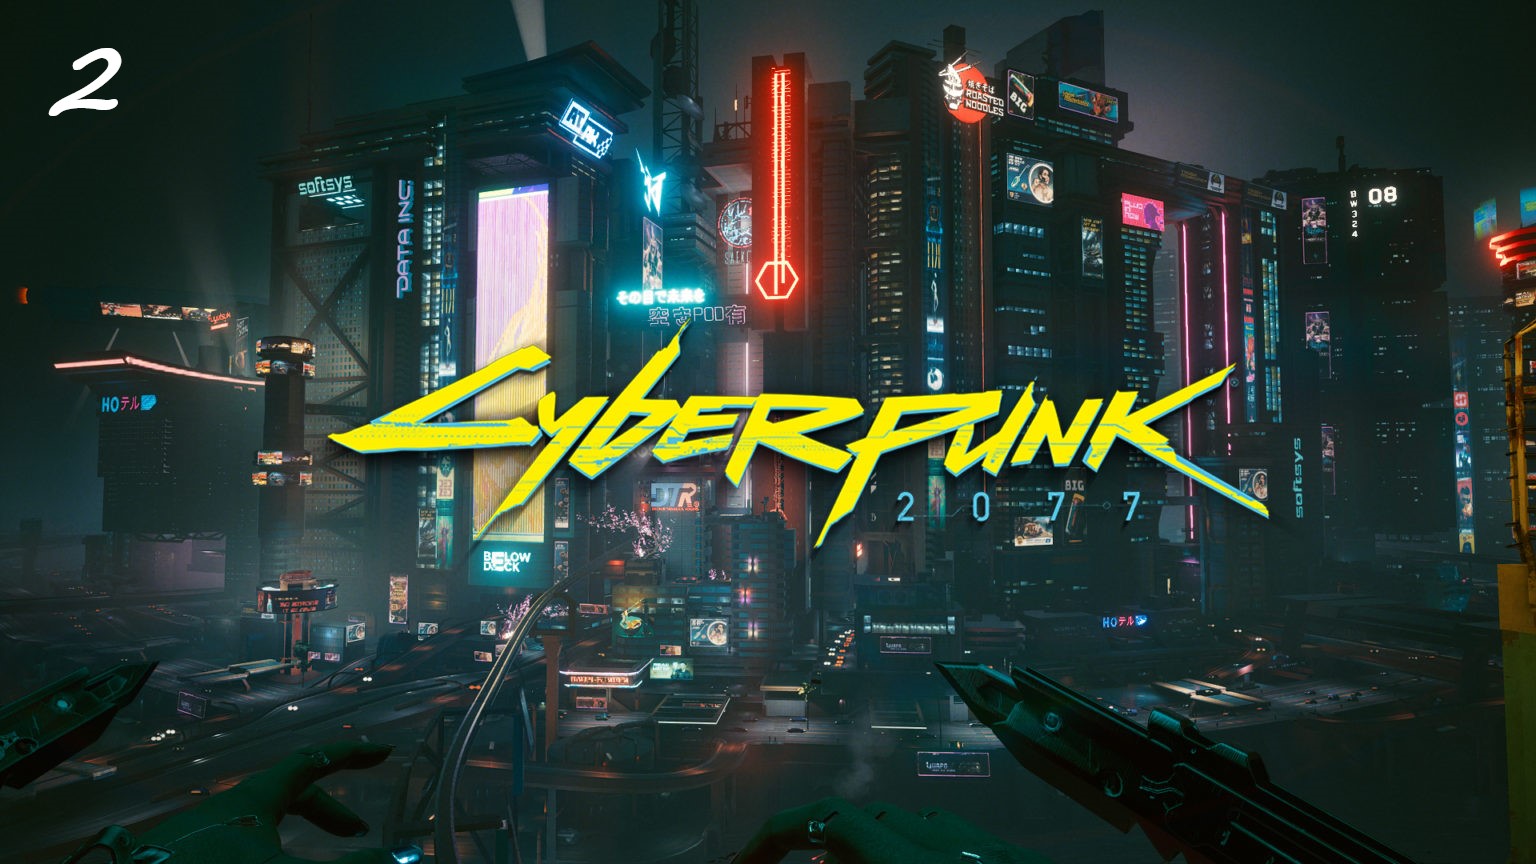 Прохождение Cyberpunk 2077 на русском - Часть вторая. Последняя игра в спасателей